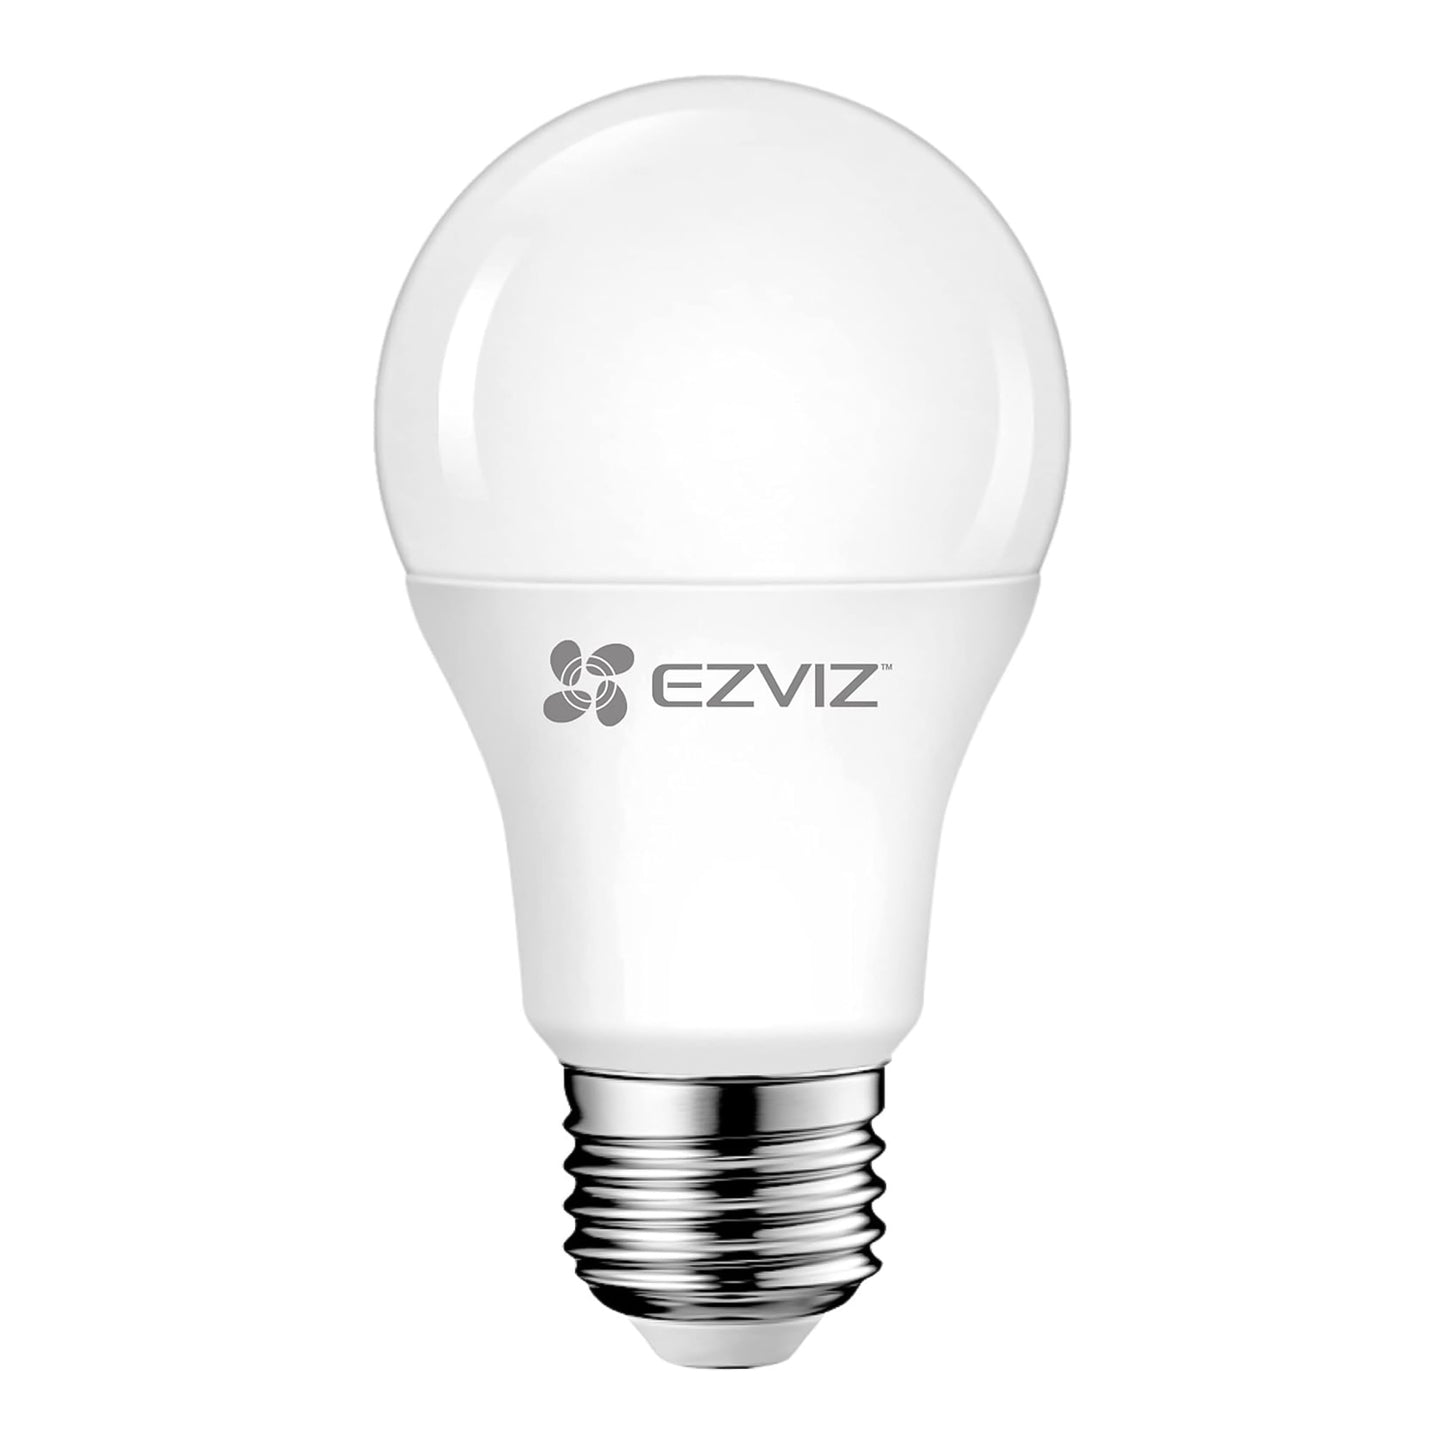 Ezviz LB1 Lampadina a LED Smart Wi-Fi, 8W 806 Lumen, controlli vocali, compatibile con Alexa, attacco E27, luce calda 2700K, dimmerabile